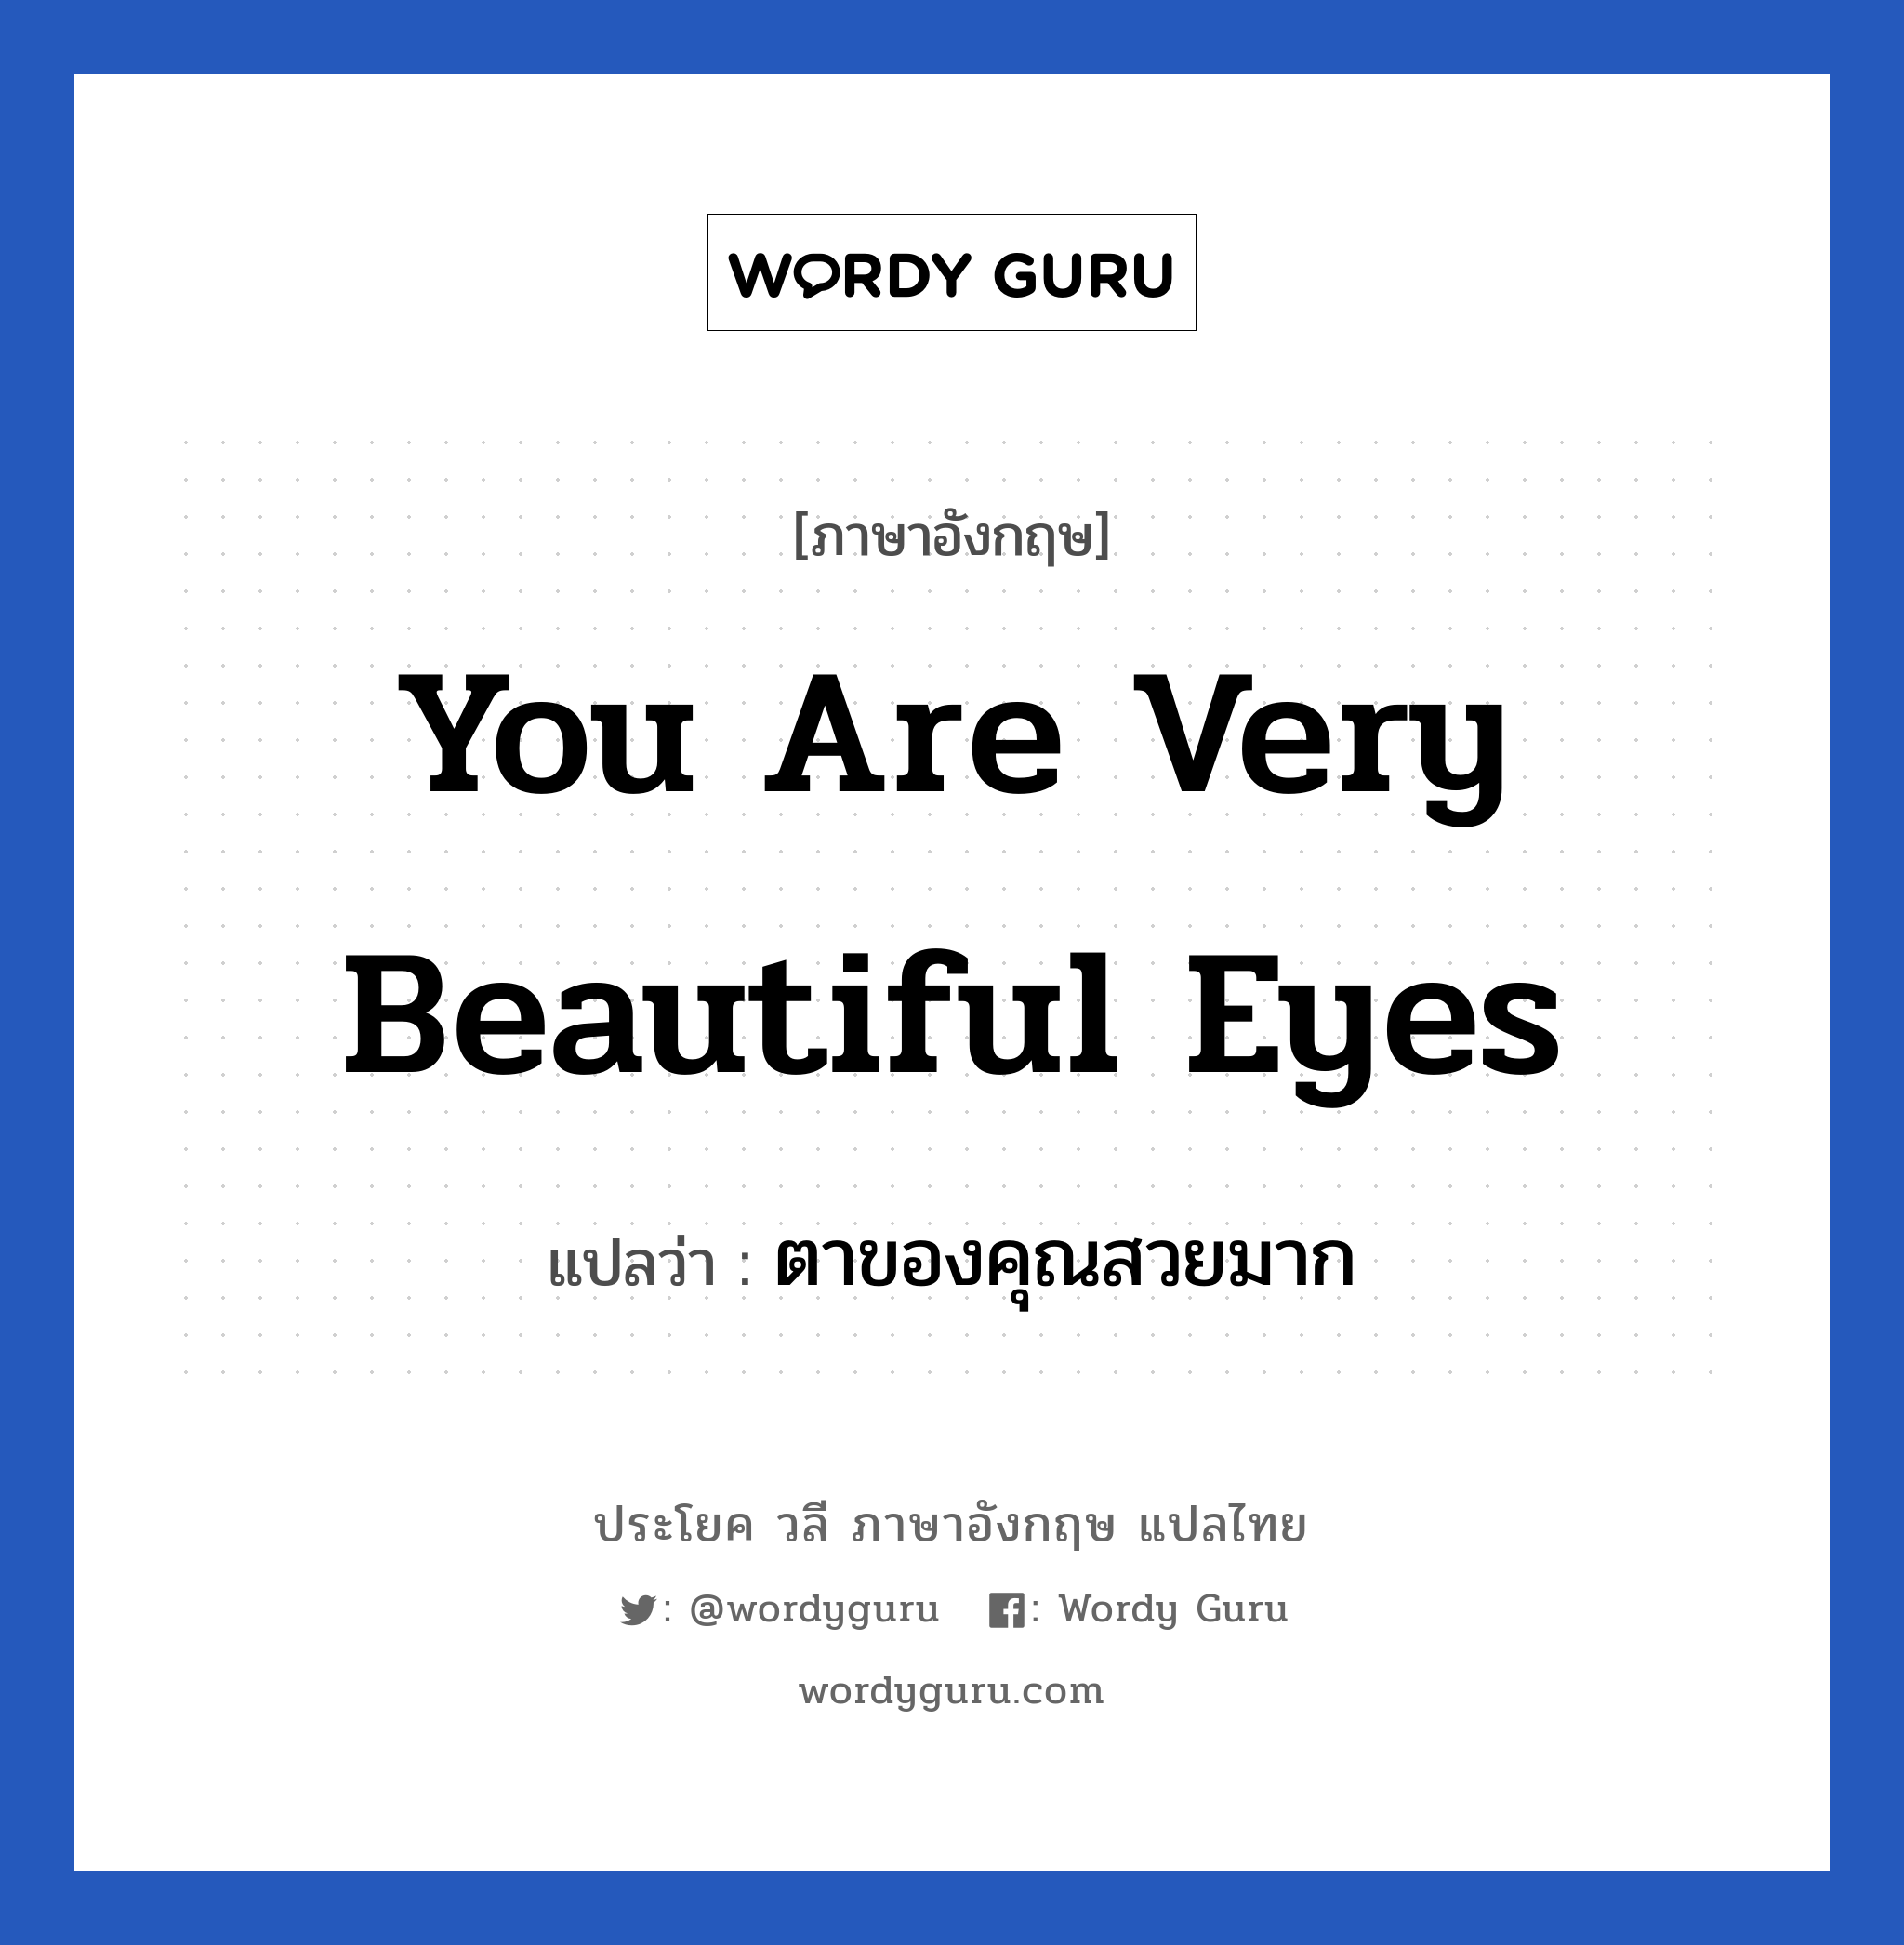 ตาของคุณสวยมาก ภาษาอังกฤษ?, วลีภาษาอังกฤษ ตาของคุณสวยมาก แปลว่า You are very beautiful eyes หมวด คำชมเชย